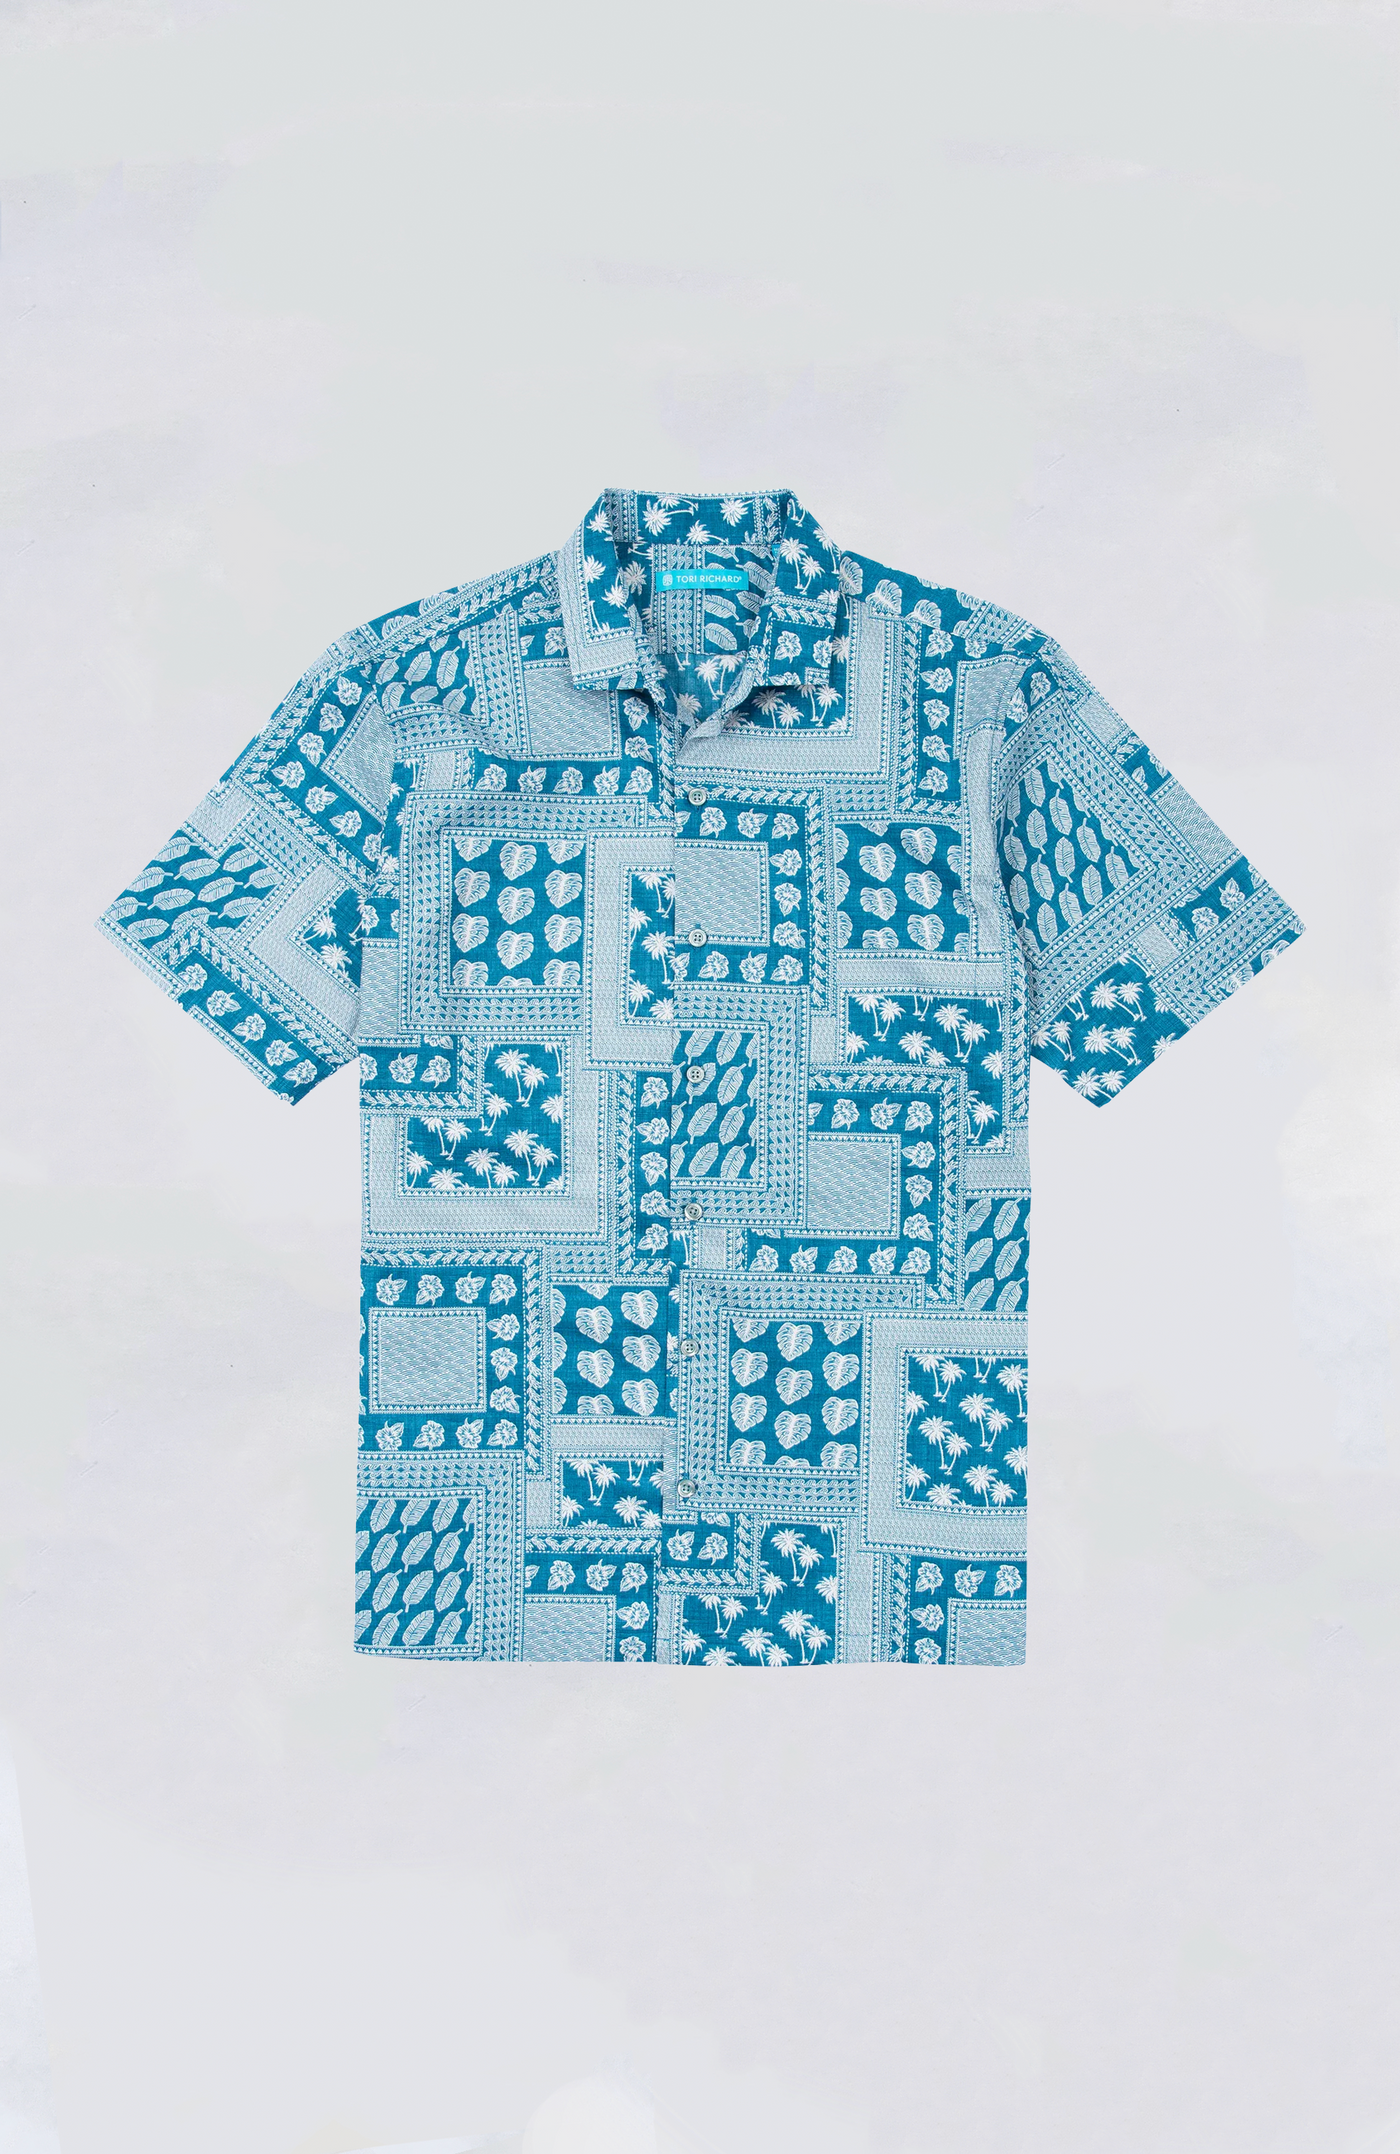 Tori Richard - Tied Together Aloha Shirt